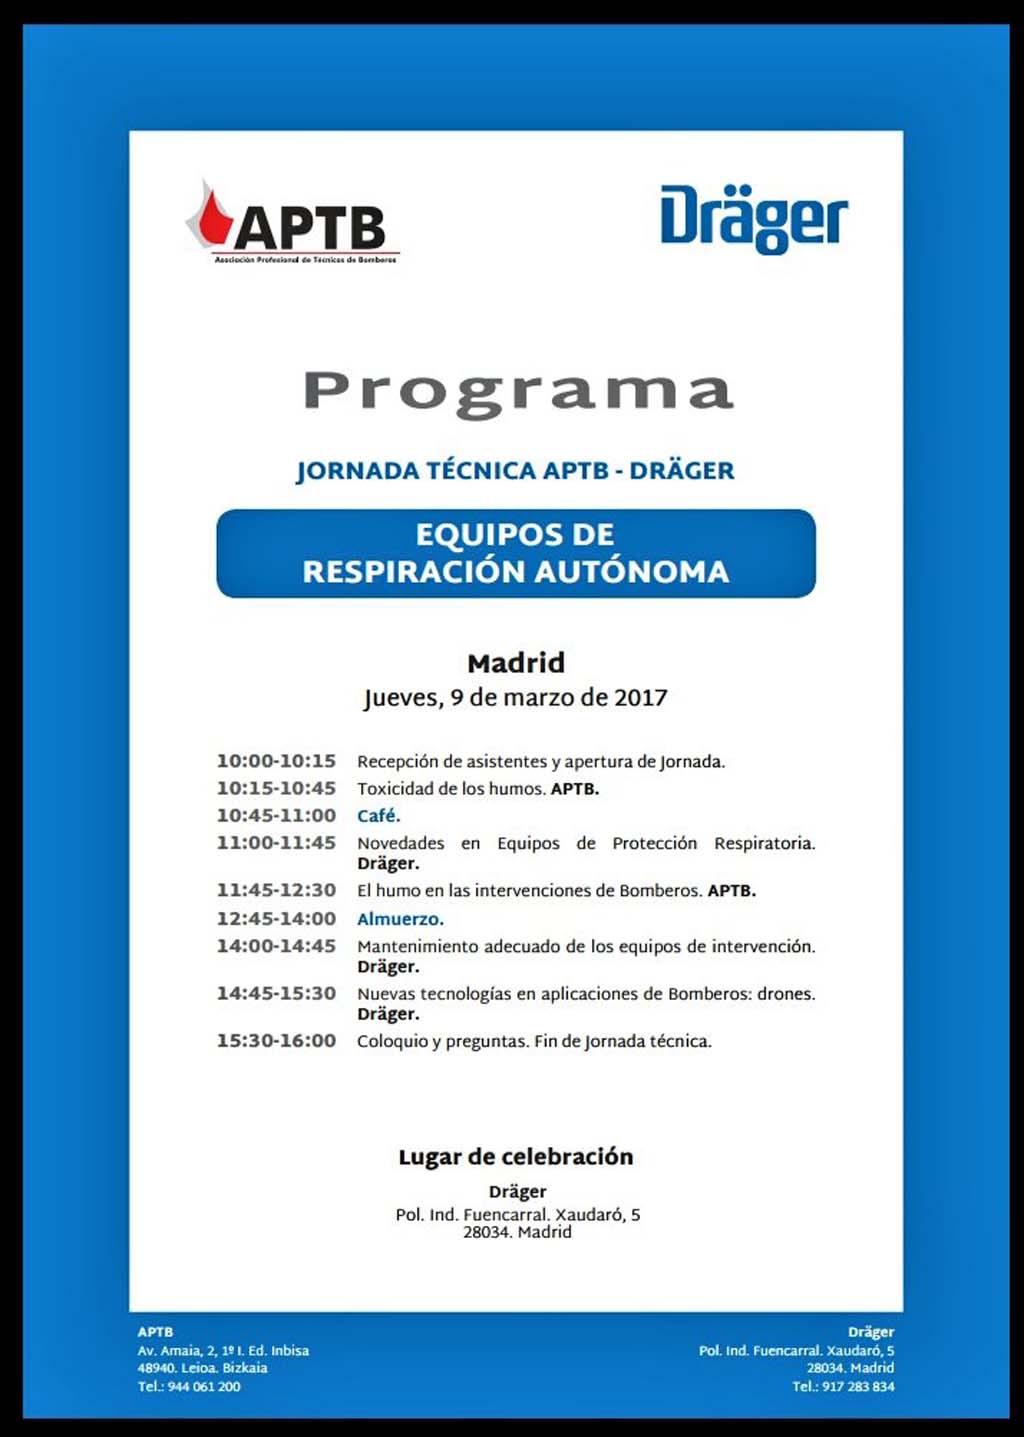 Jornada Técnica de Equipos de Respiración Autónoma, el 9 de marzo en Madrid, nueva cita de #APTB y #Dräger